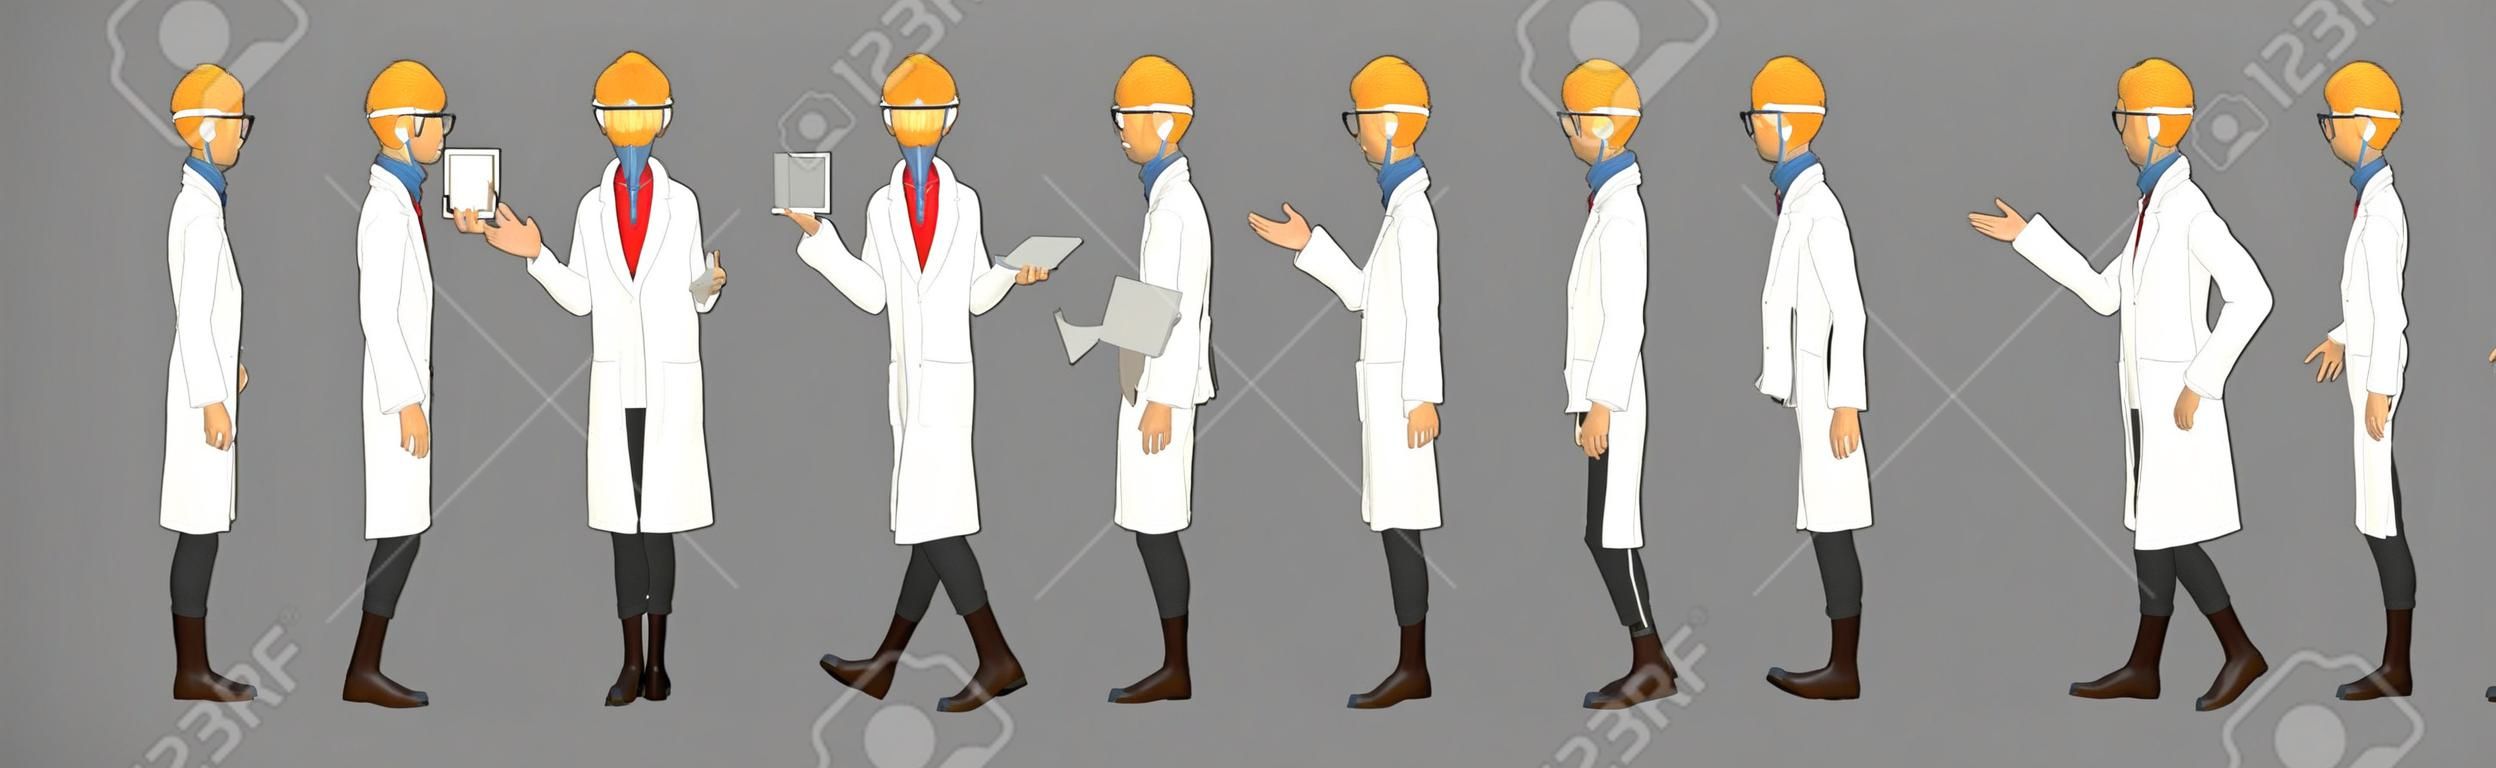 걷기 주기 애니메이션 시퀀스가 있는 과학자 캐릭터 모델 시트